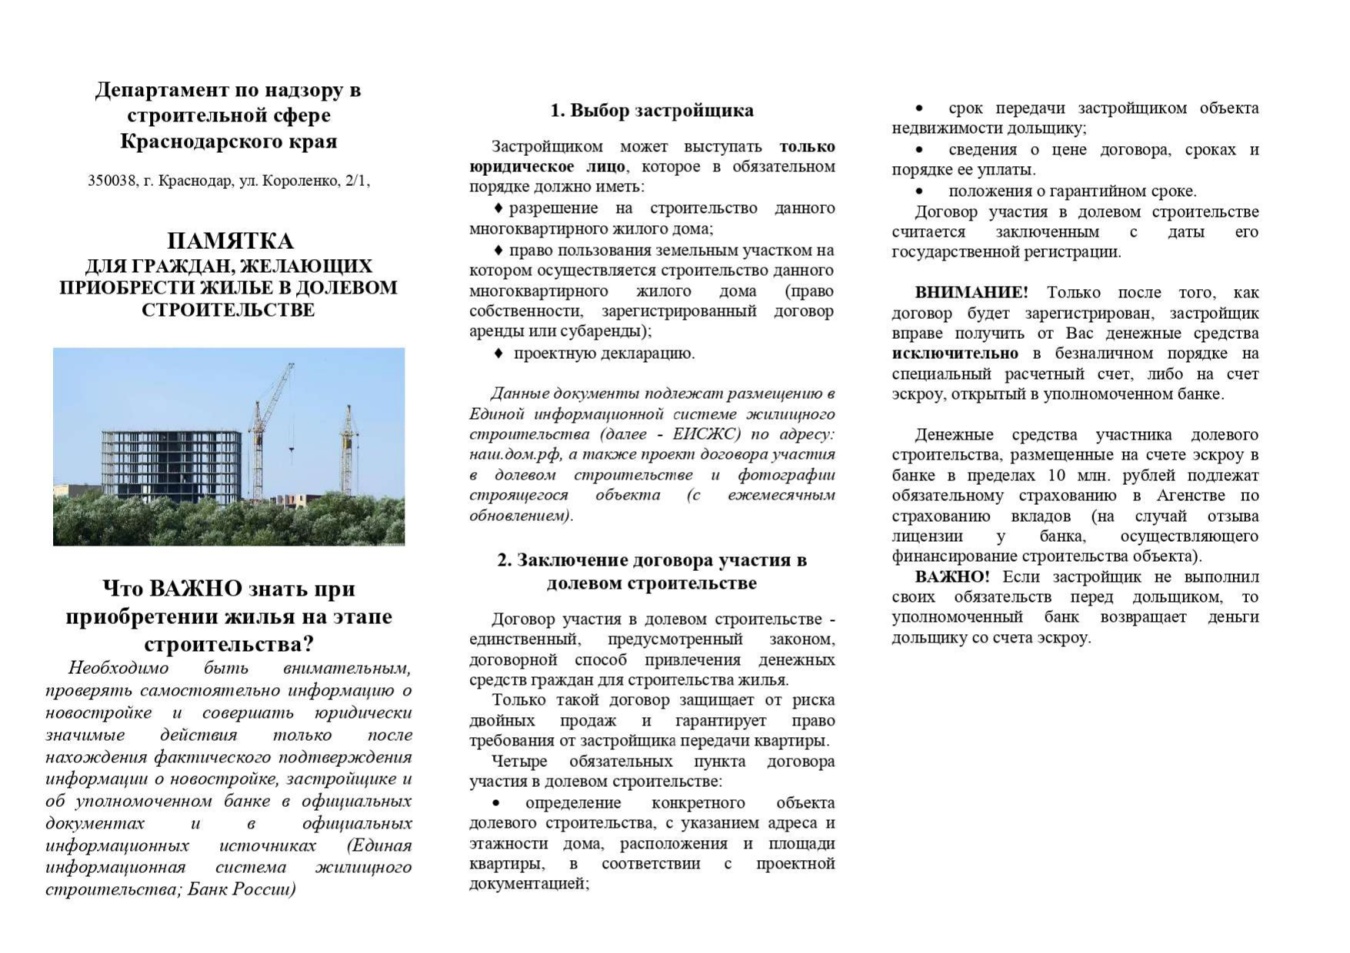 Департамент по надзору в строительной сфере Краснодарского края информирует о правилах застройки